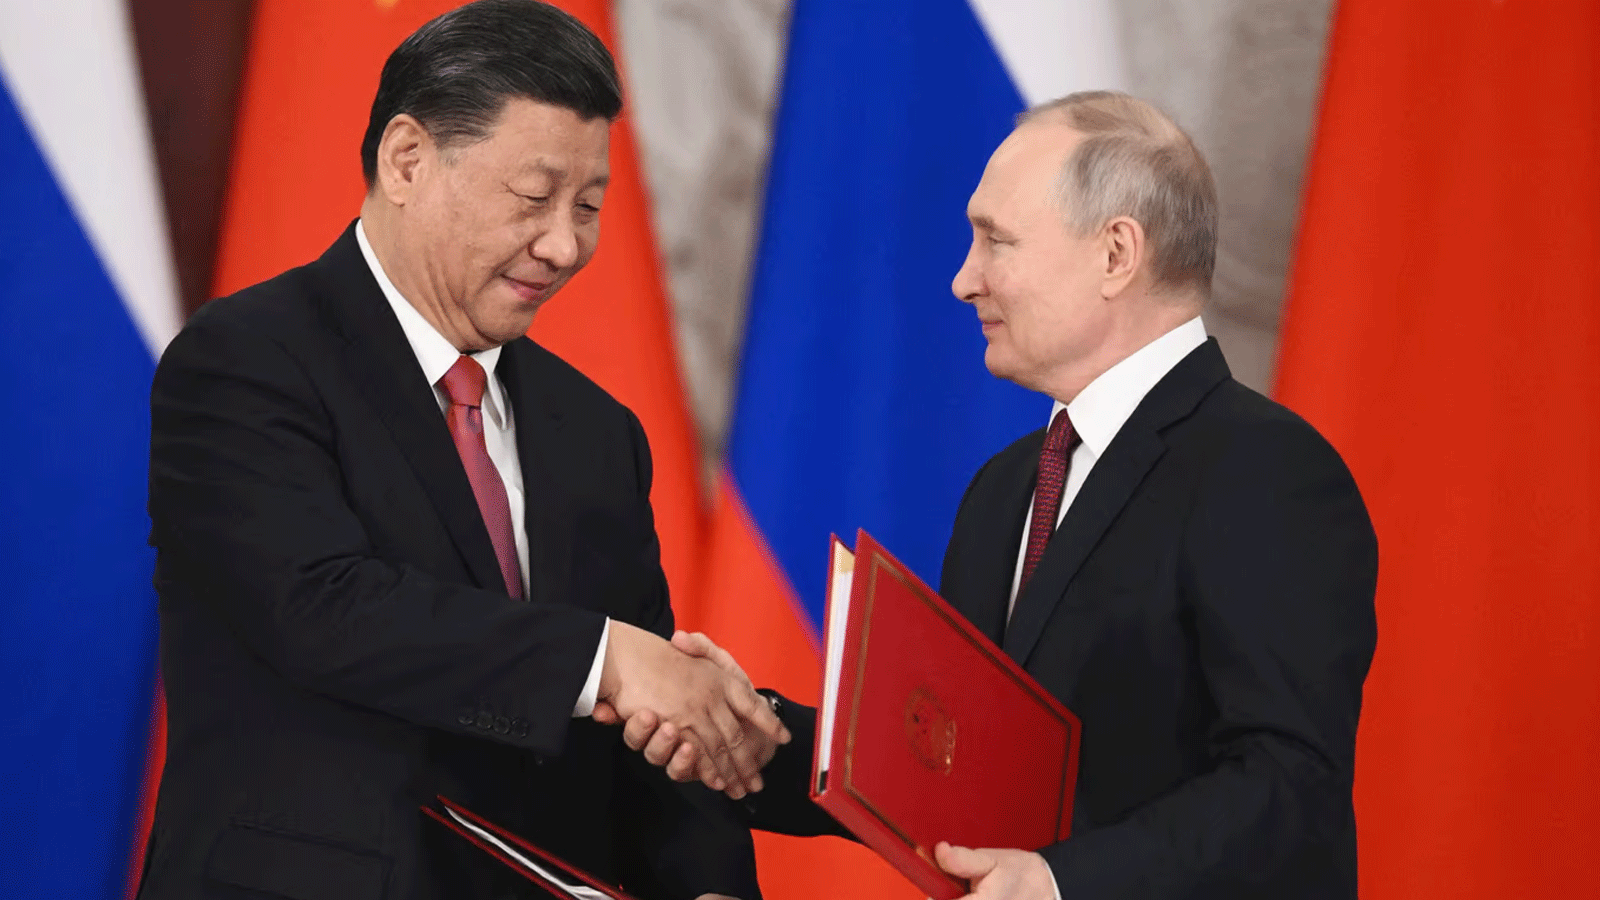 الرئيسان الروسي فلاديمير بوتين والصيني شي جين بينغ يتصافحان خلال حفل توقيع اتفاقيات بعد محادثاتهما في الكرملين في موسكو. 21 مارس\آذار 2023